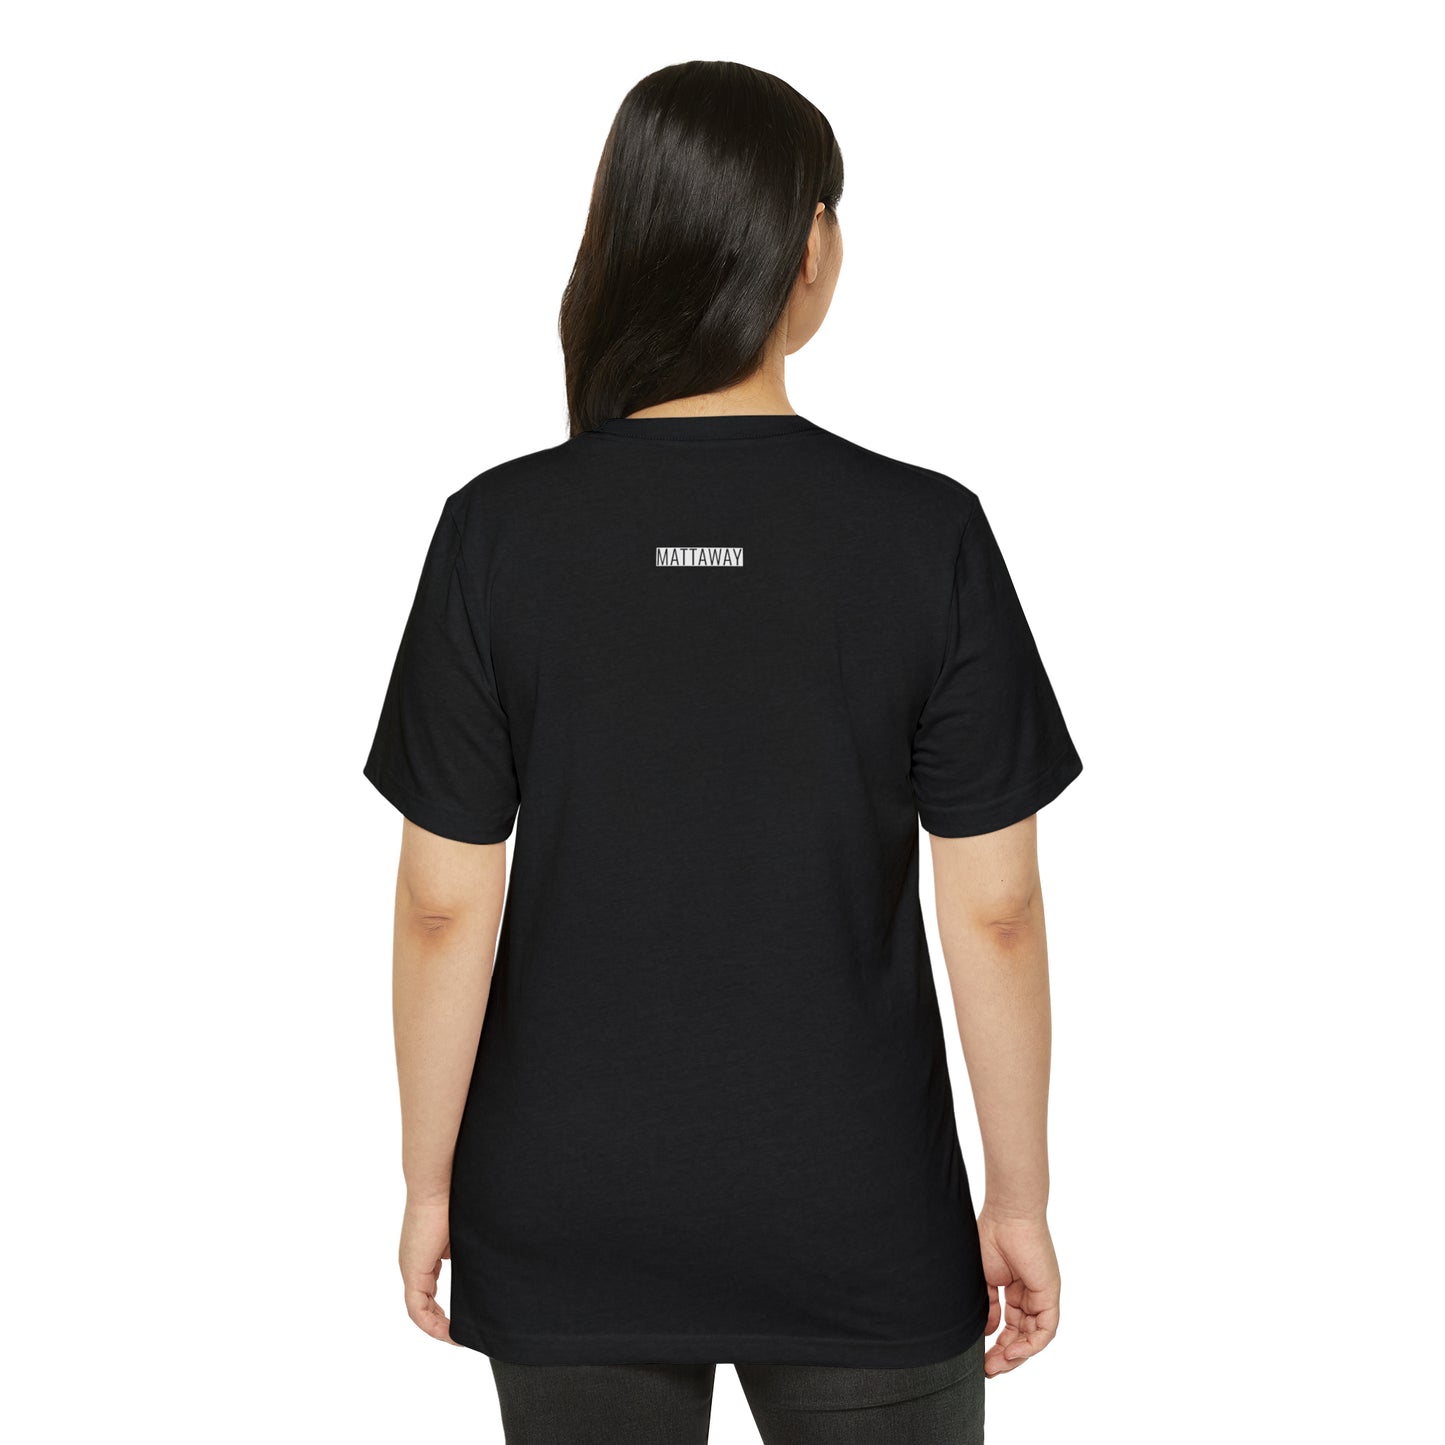 MINIMAL SHAPES 102 - Camiseta ecológica reciclada unisex